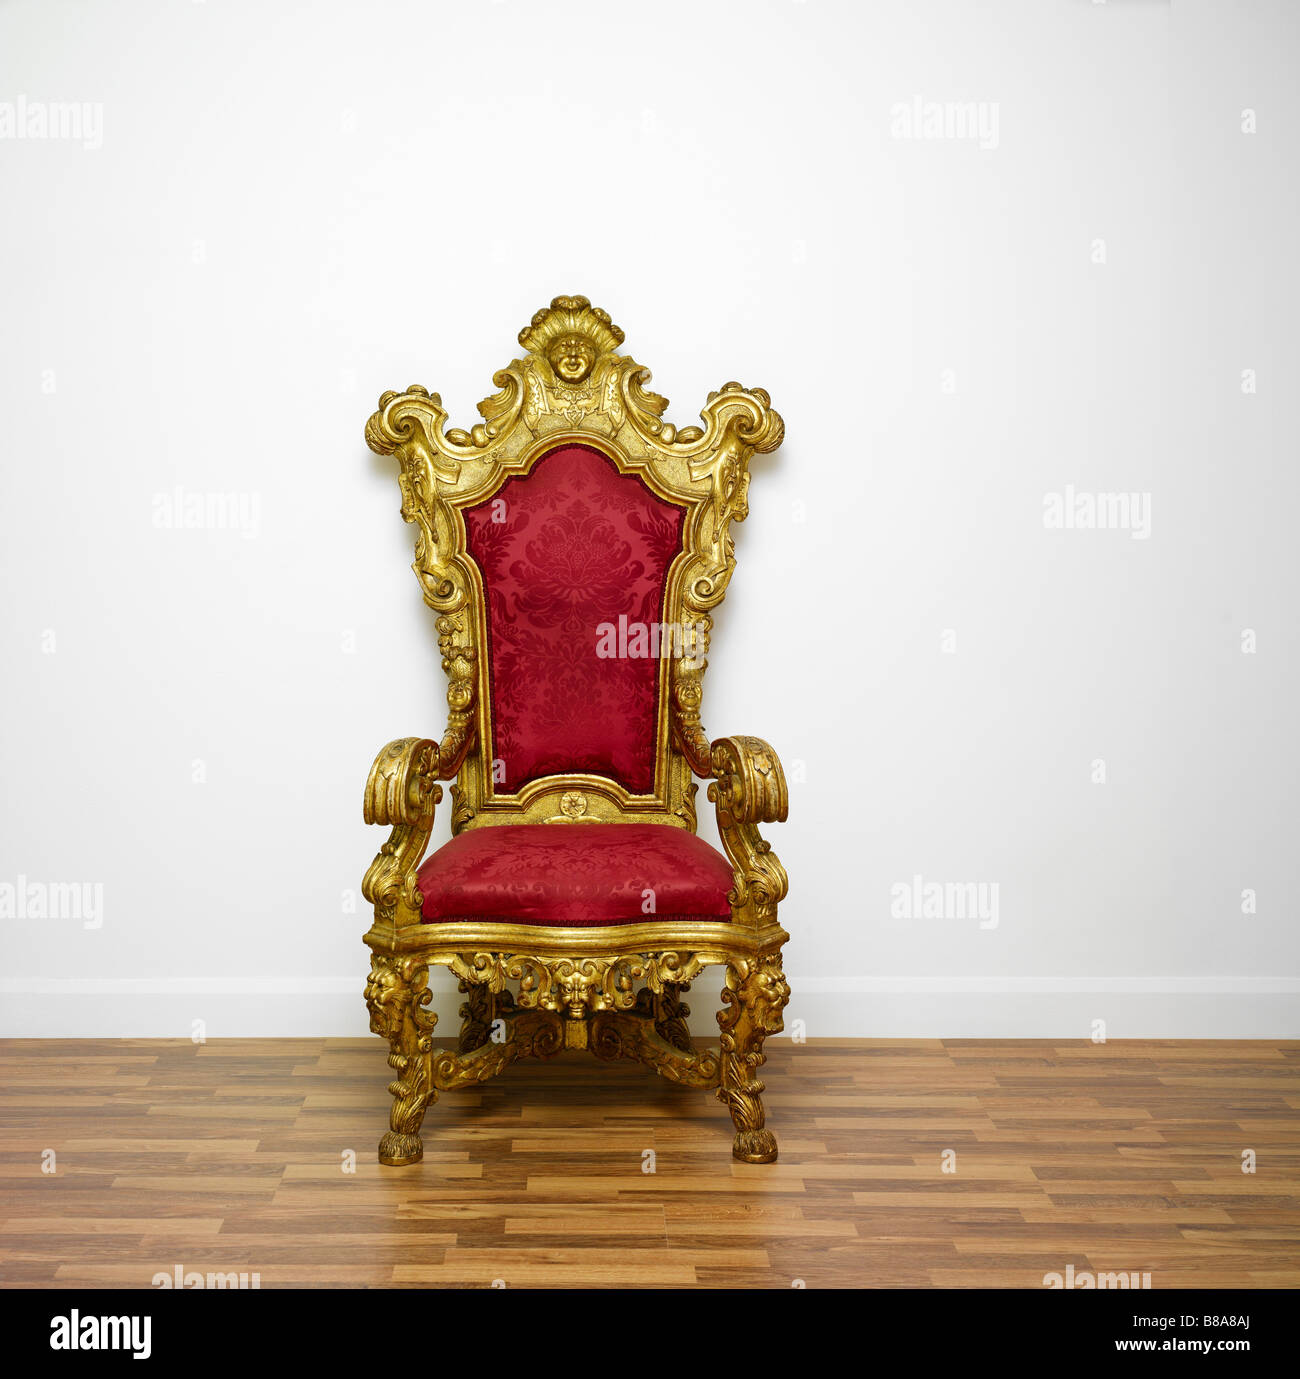 Ein roter und goldener Thron Stuhl auf weißem Hintergrund Stockfotografie -  Alamy